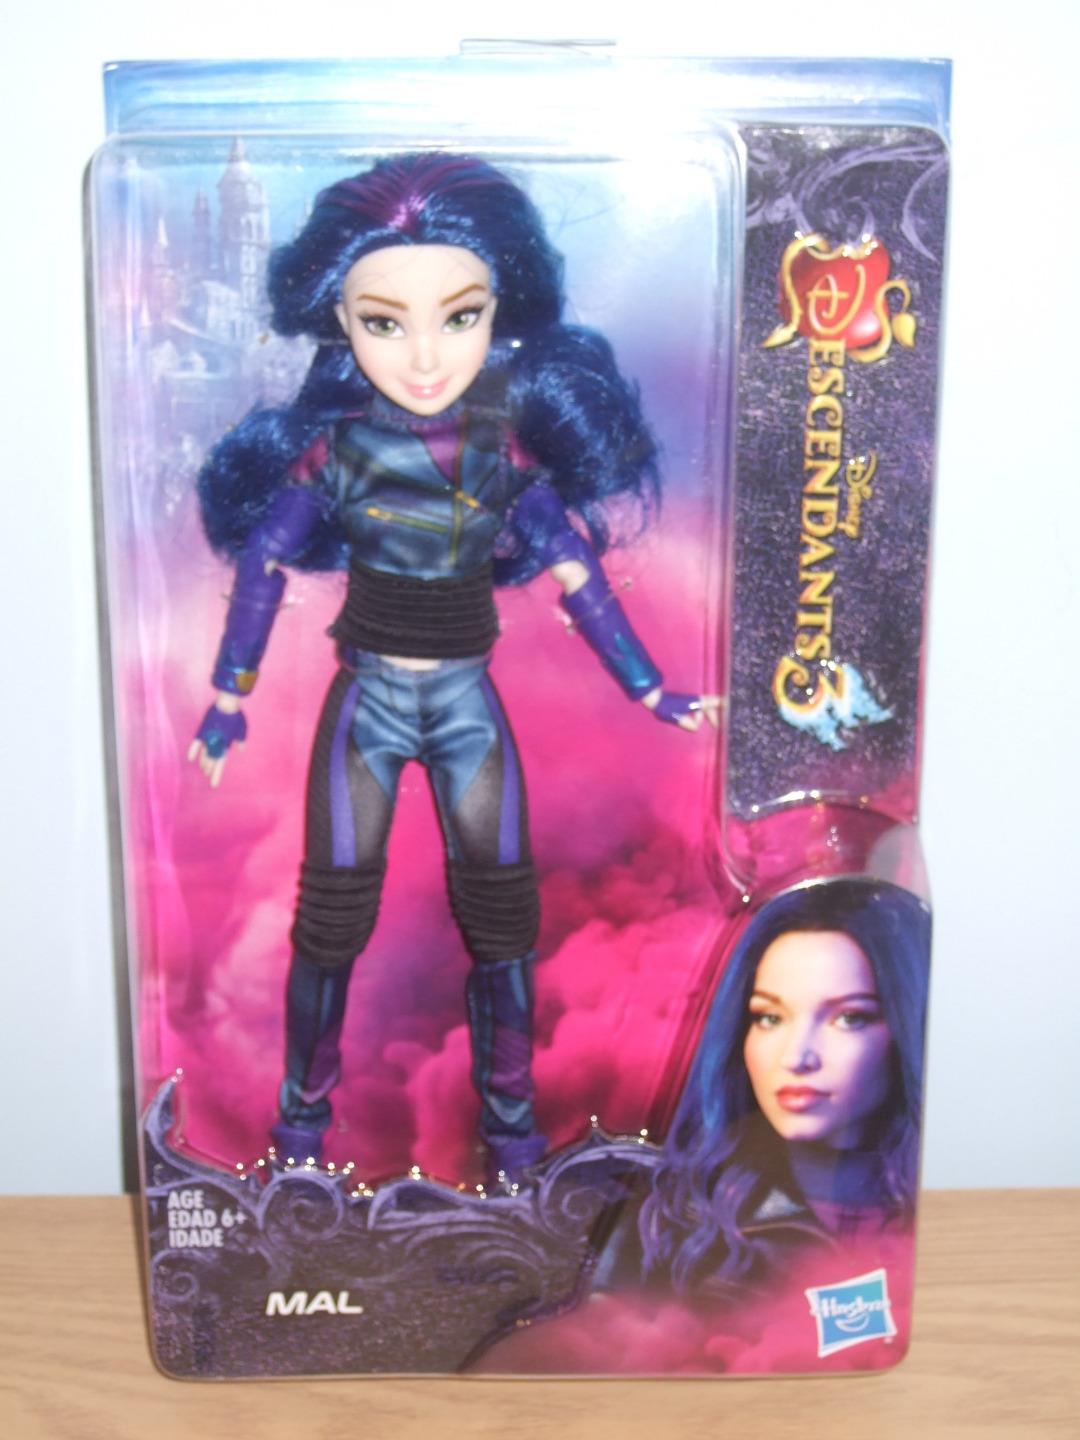 Descendants 3 Mal Doll - Brand New In Box 630509834839 | eBay